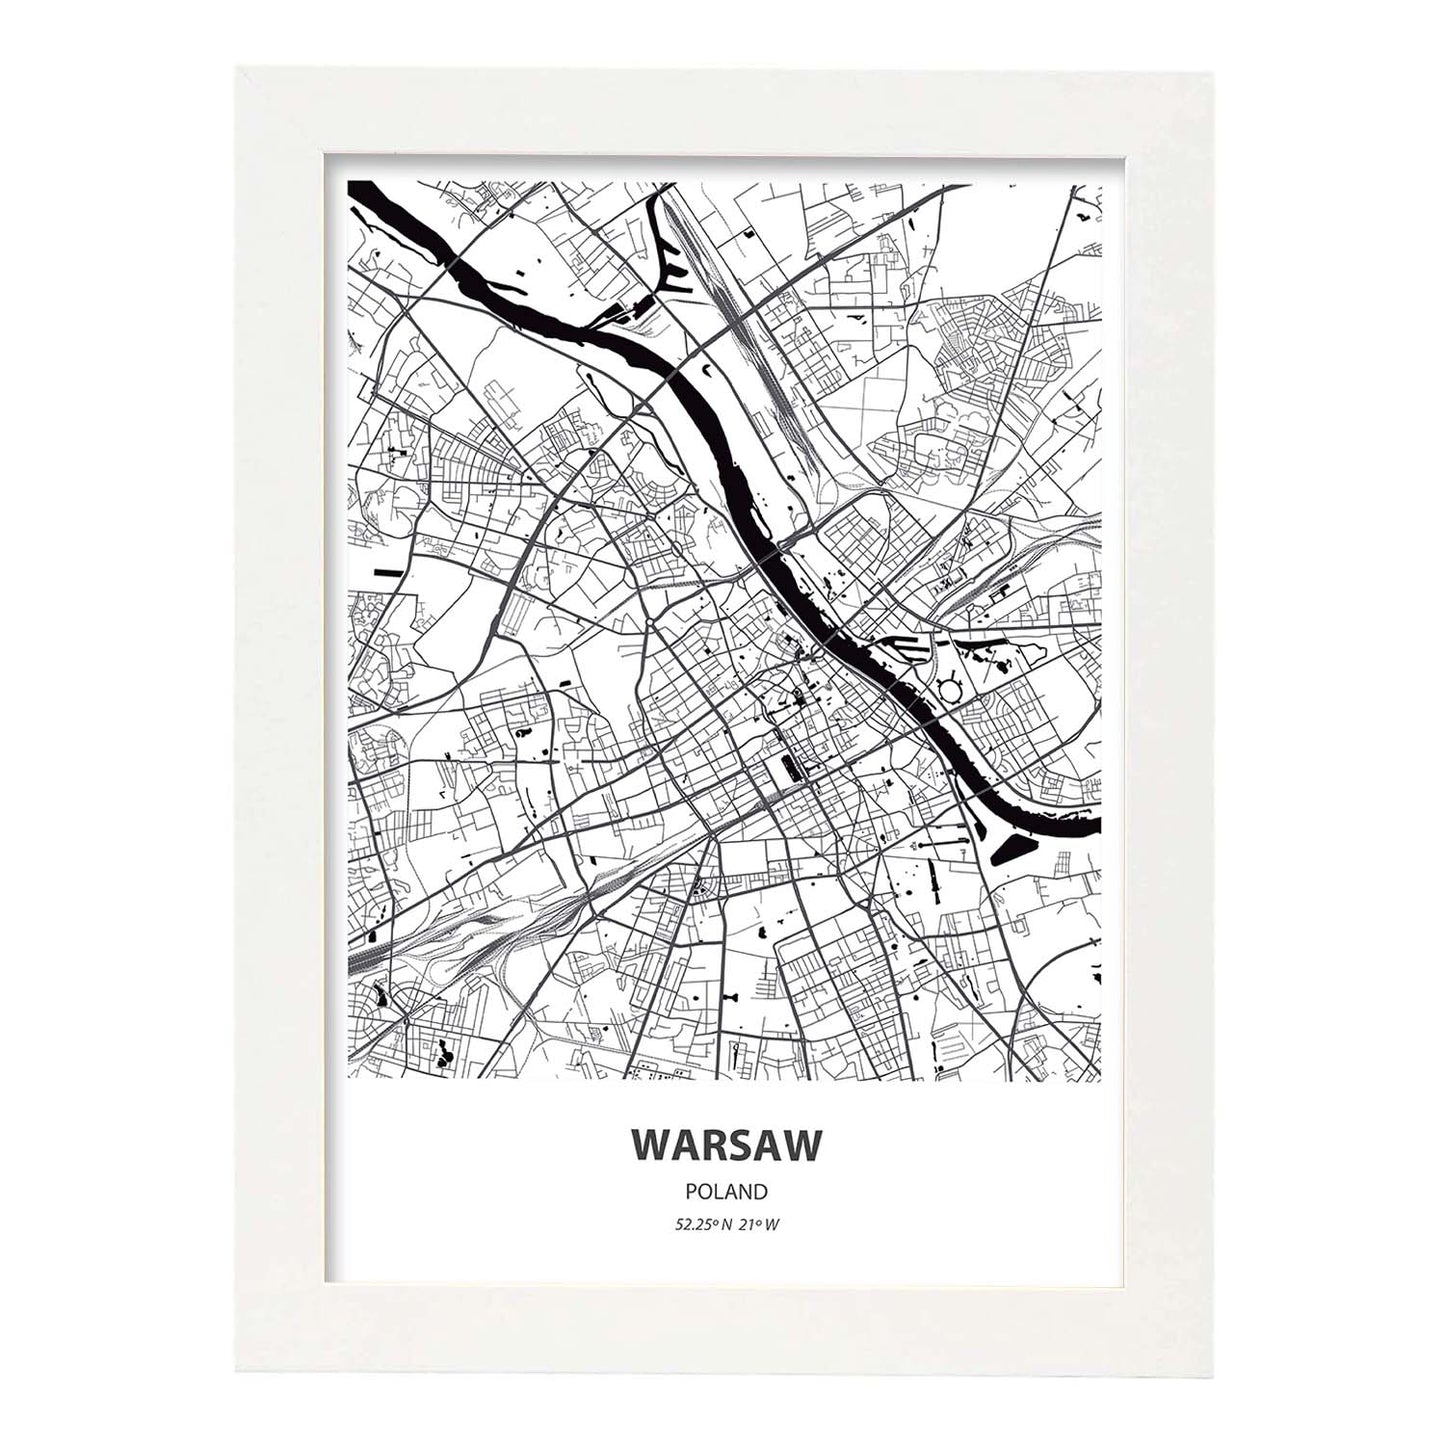 Poster con mapa de Warsaw - Polonia. Láminas de ciudades de Europa con mares y ríos en color negro.-Artwork-Nacnic-A3-Marco Blanco-Nacnic Estudio SL